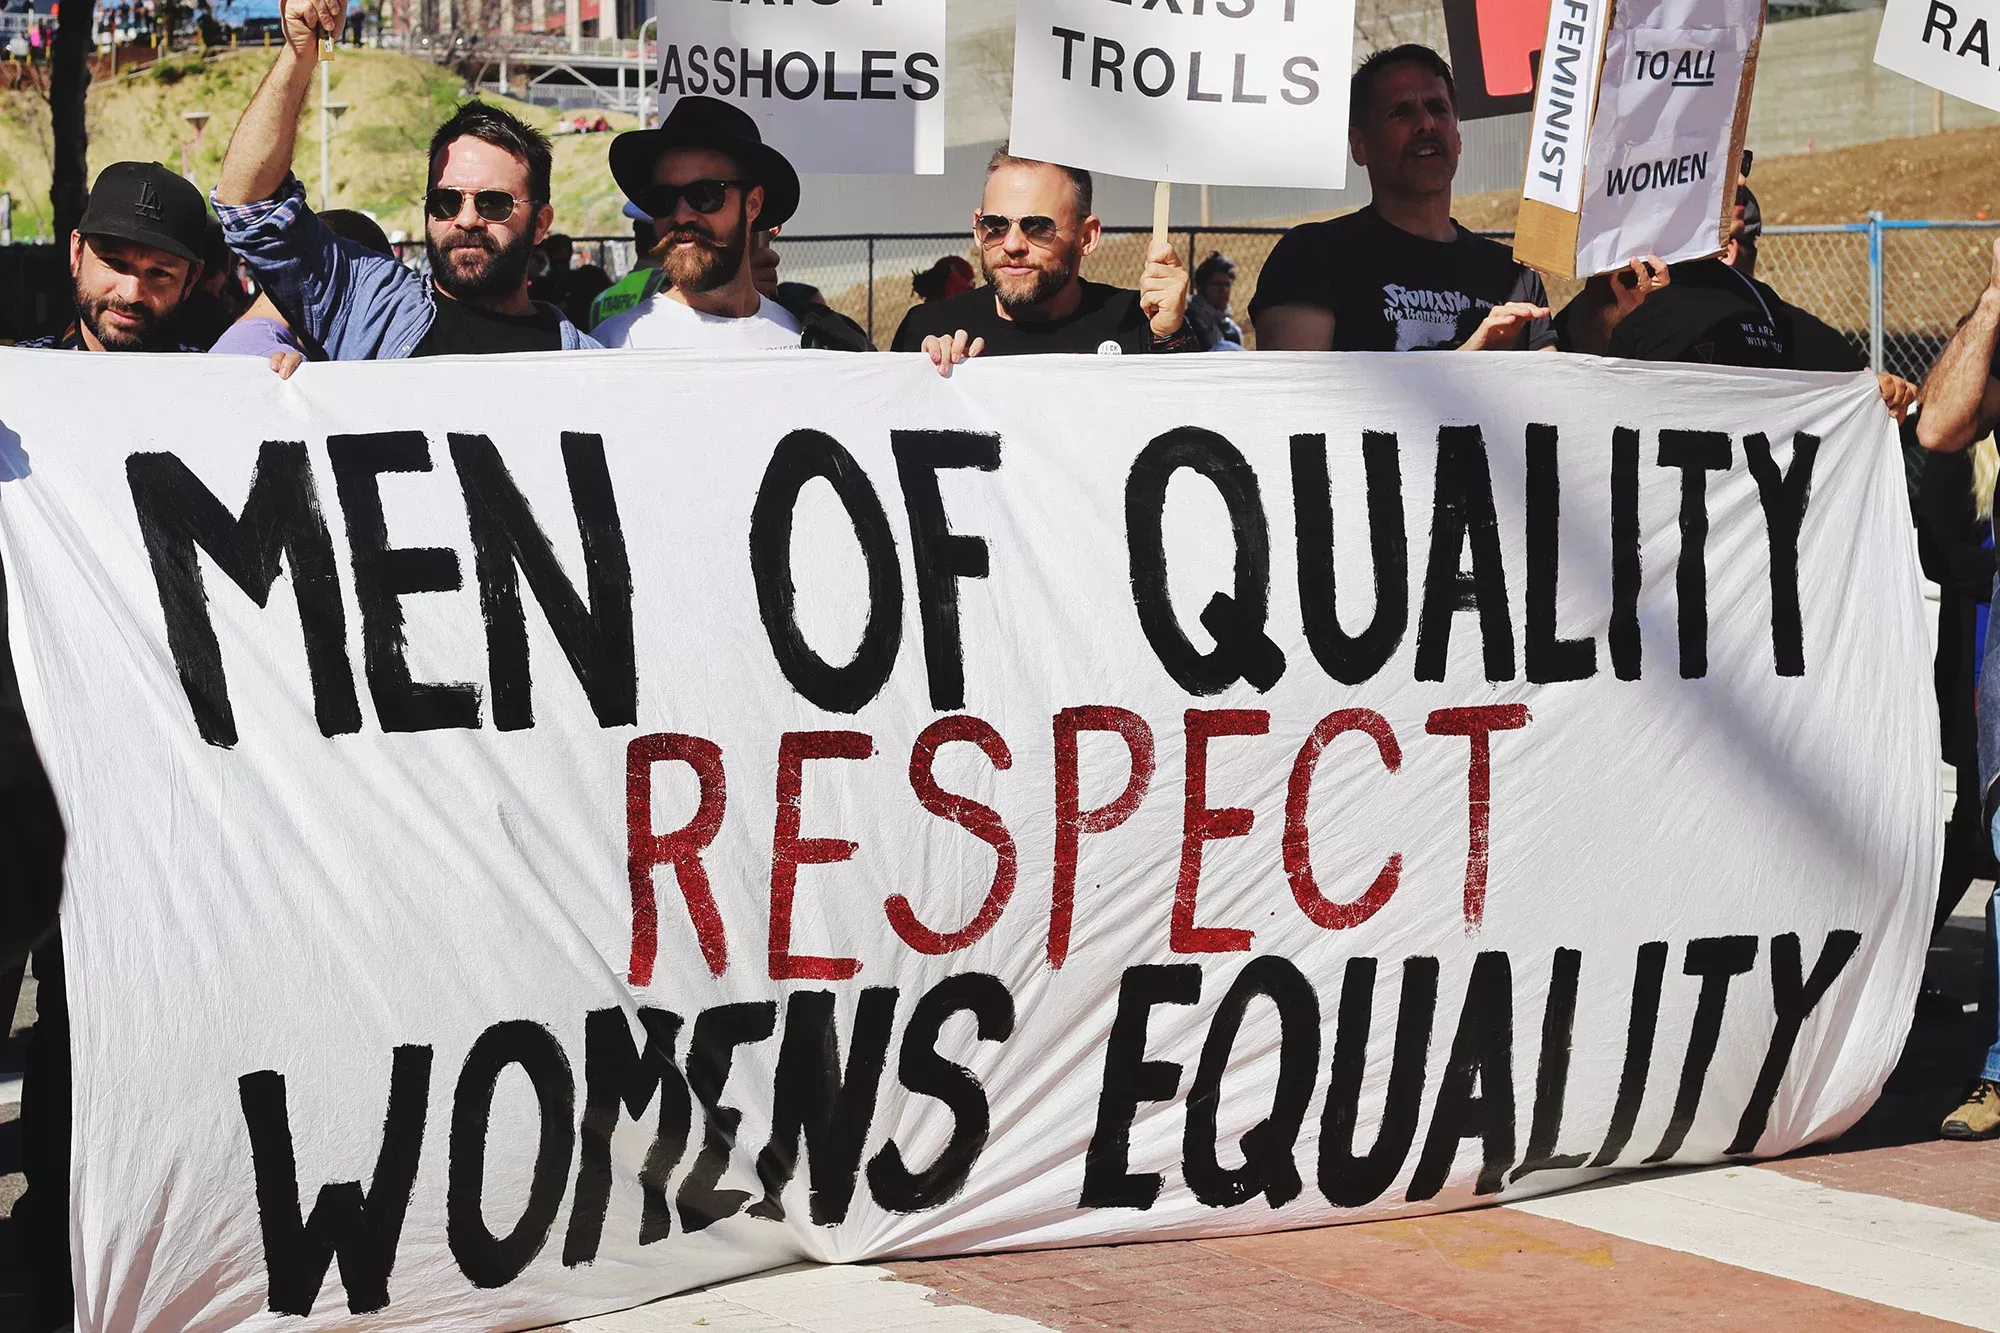 Männer auf einer Demo, Banner mit Text "Men of quality respect womens equality", Gefühl von Gemeinschaft und Solidarität